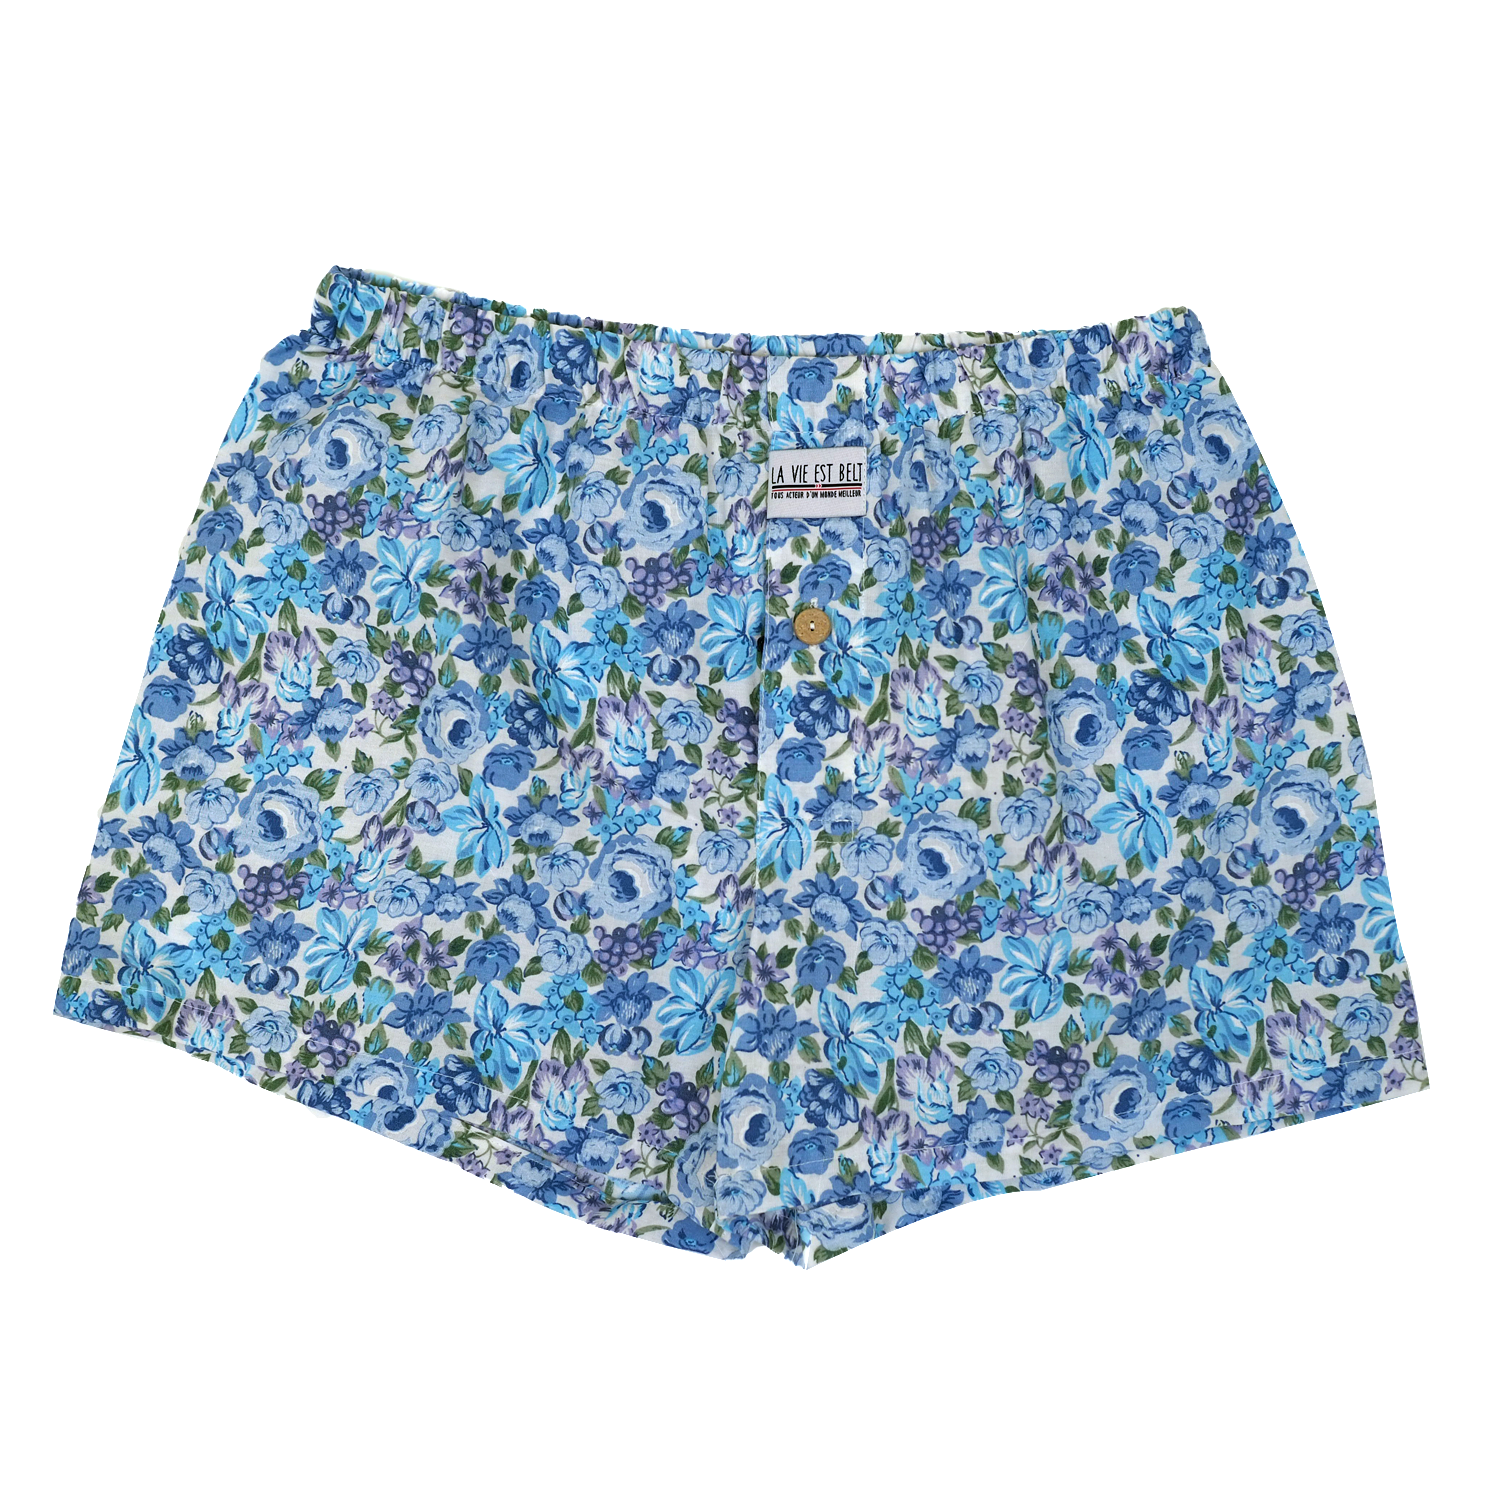 Boxer shorts plain 2.0 - floral motifs